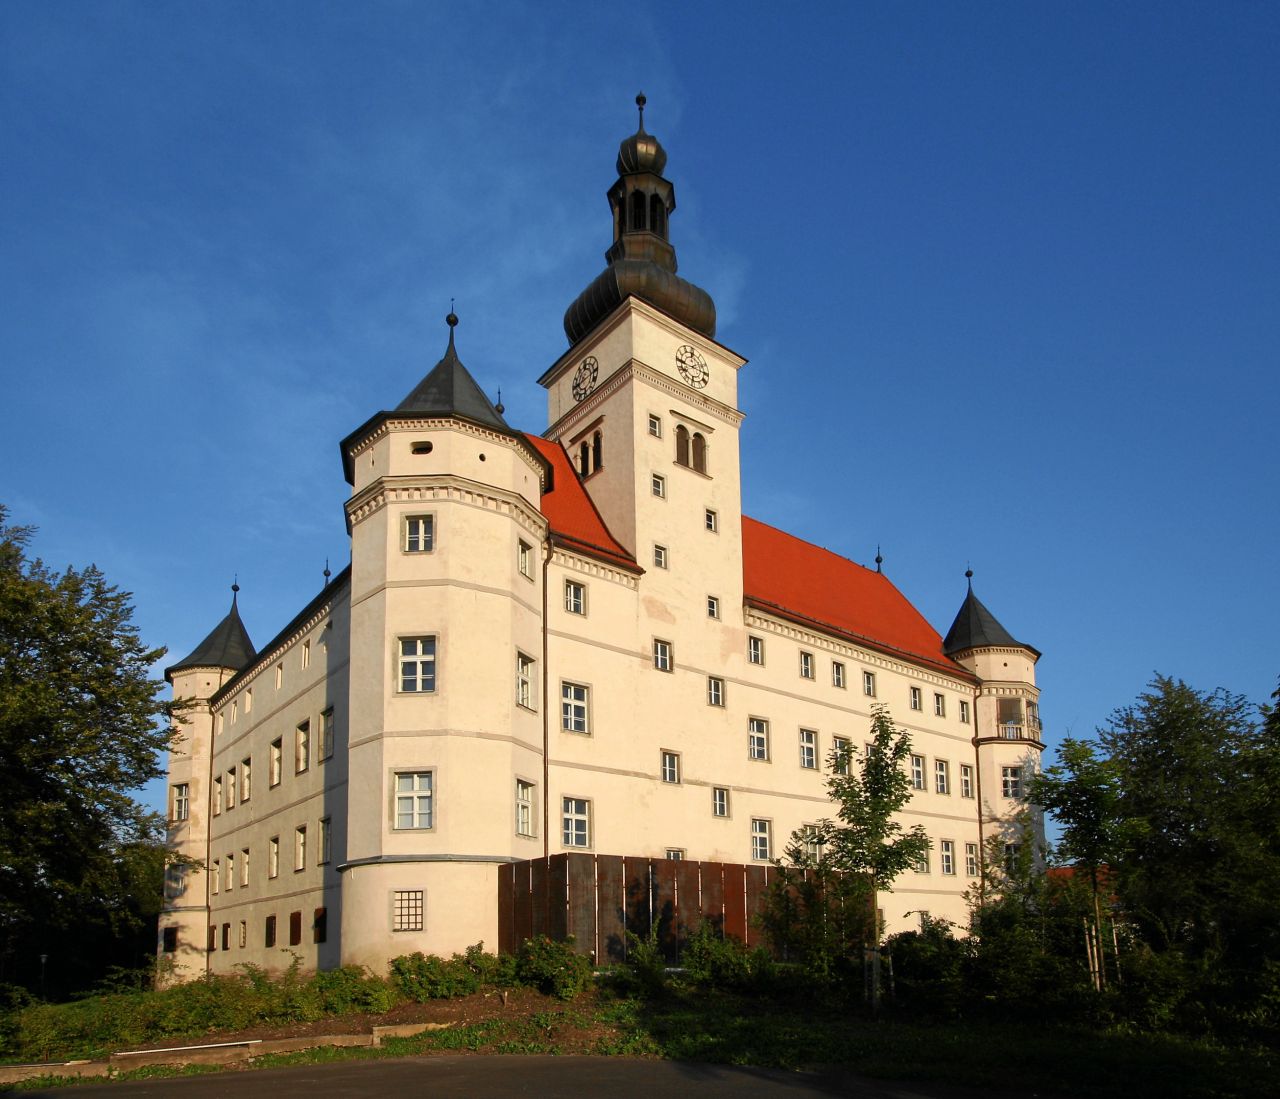 Schloss Hartheim mit einer Kunstinstallation, die an den Holzverschlag erinnern soll